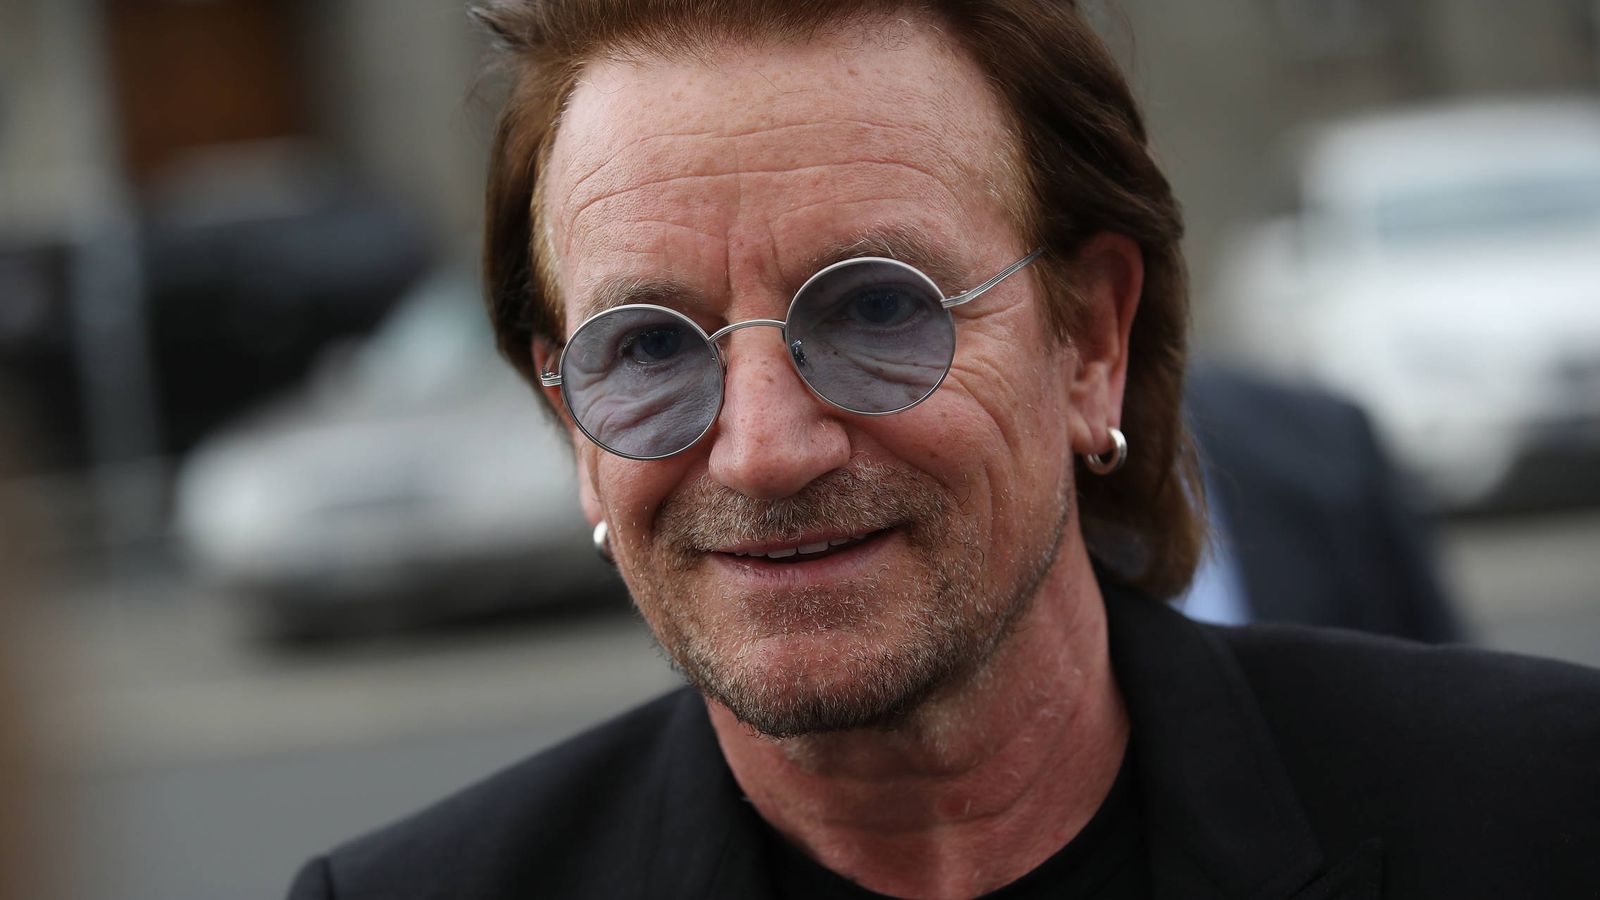 Bono U2 Lanza Su Primera Cancion En 3 Anos Dedicada A Los